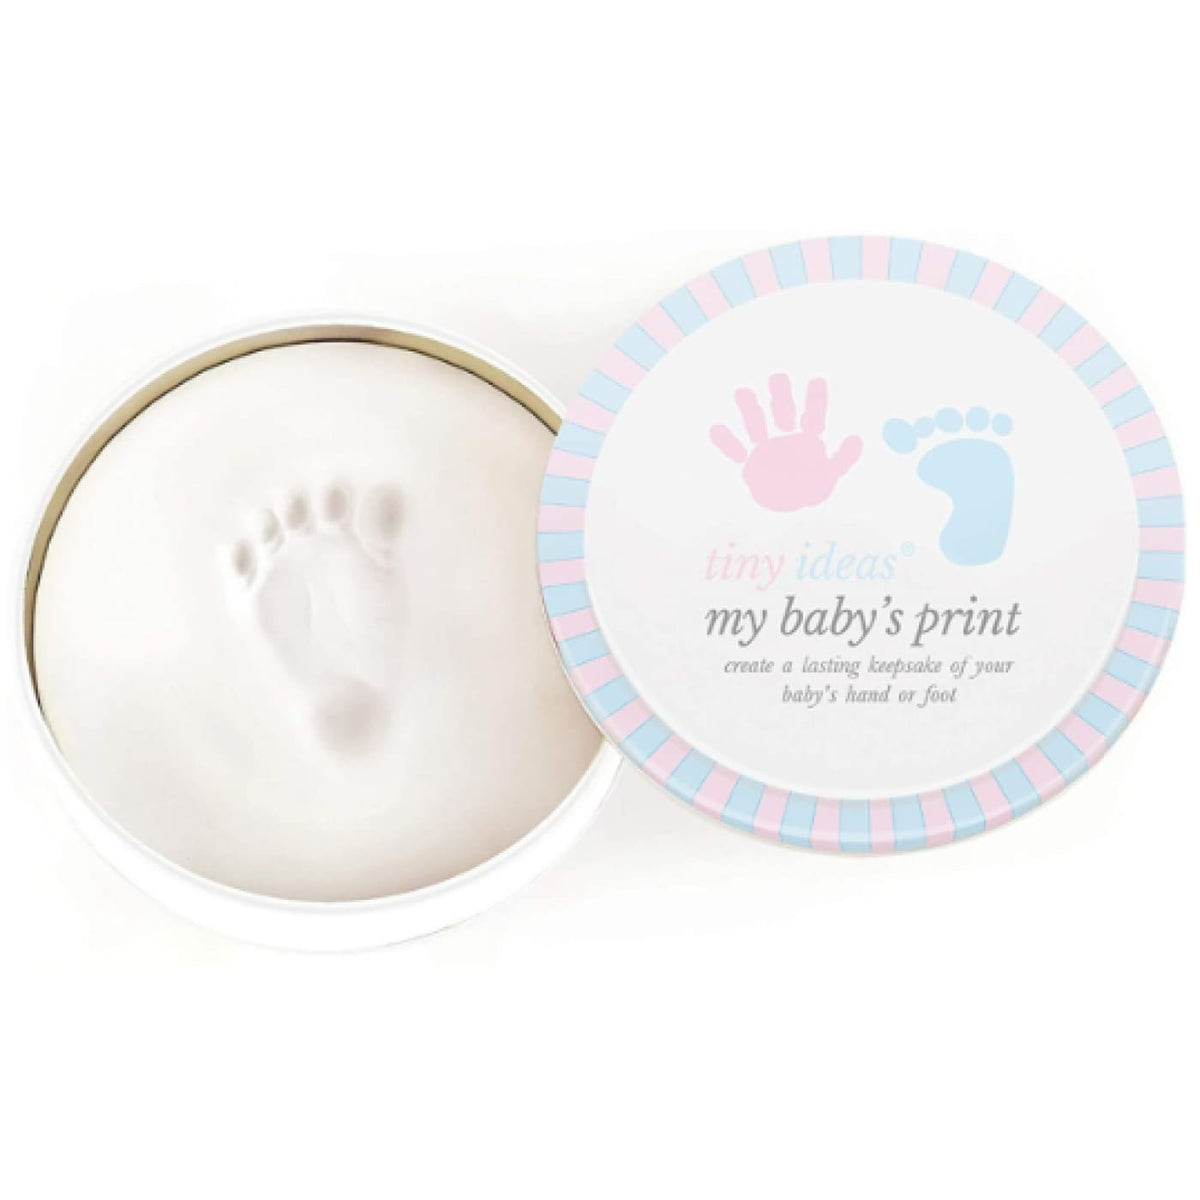 Pearhead Babyprints Tin - White - White - GIFTWARE - KEEPSAKES